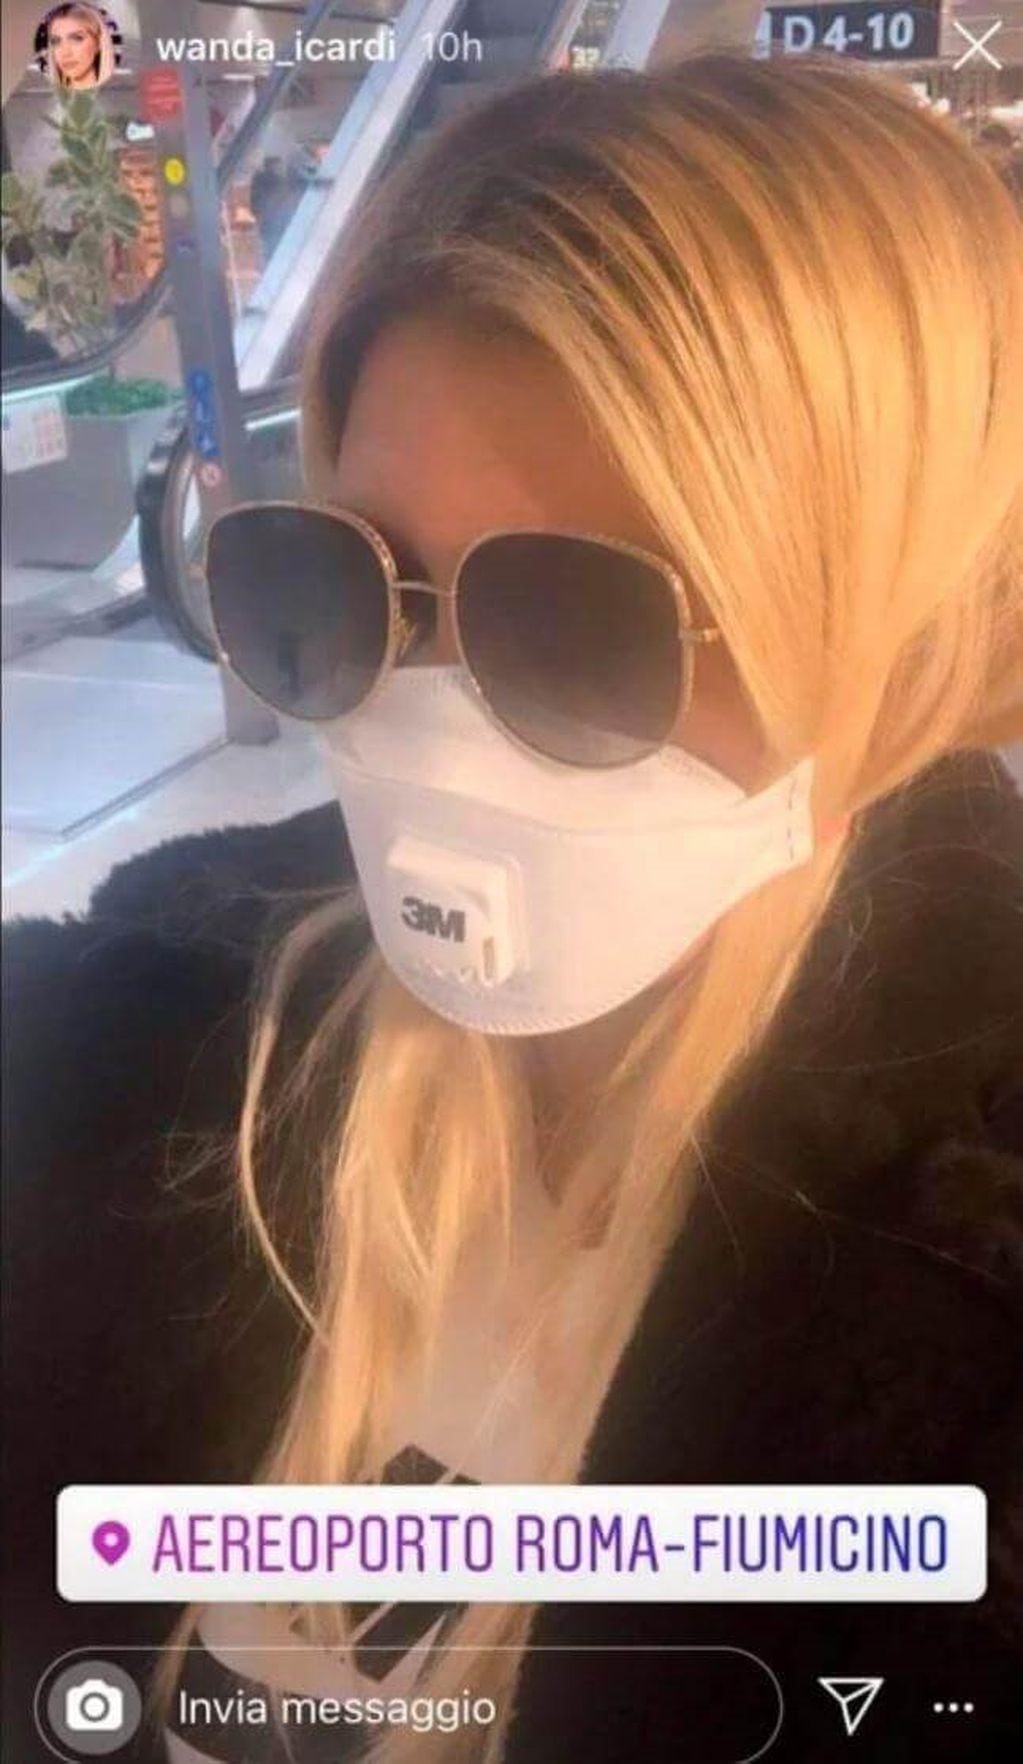 Wanda Nara, en el aeropuerto, mostrando su forma de protegerse del coronavirus.